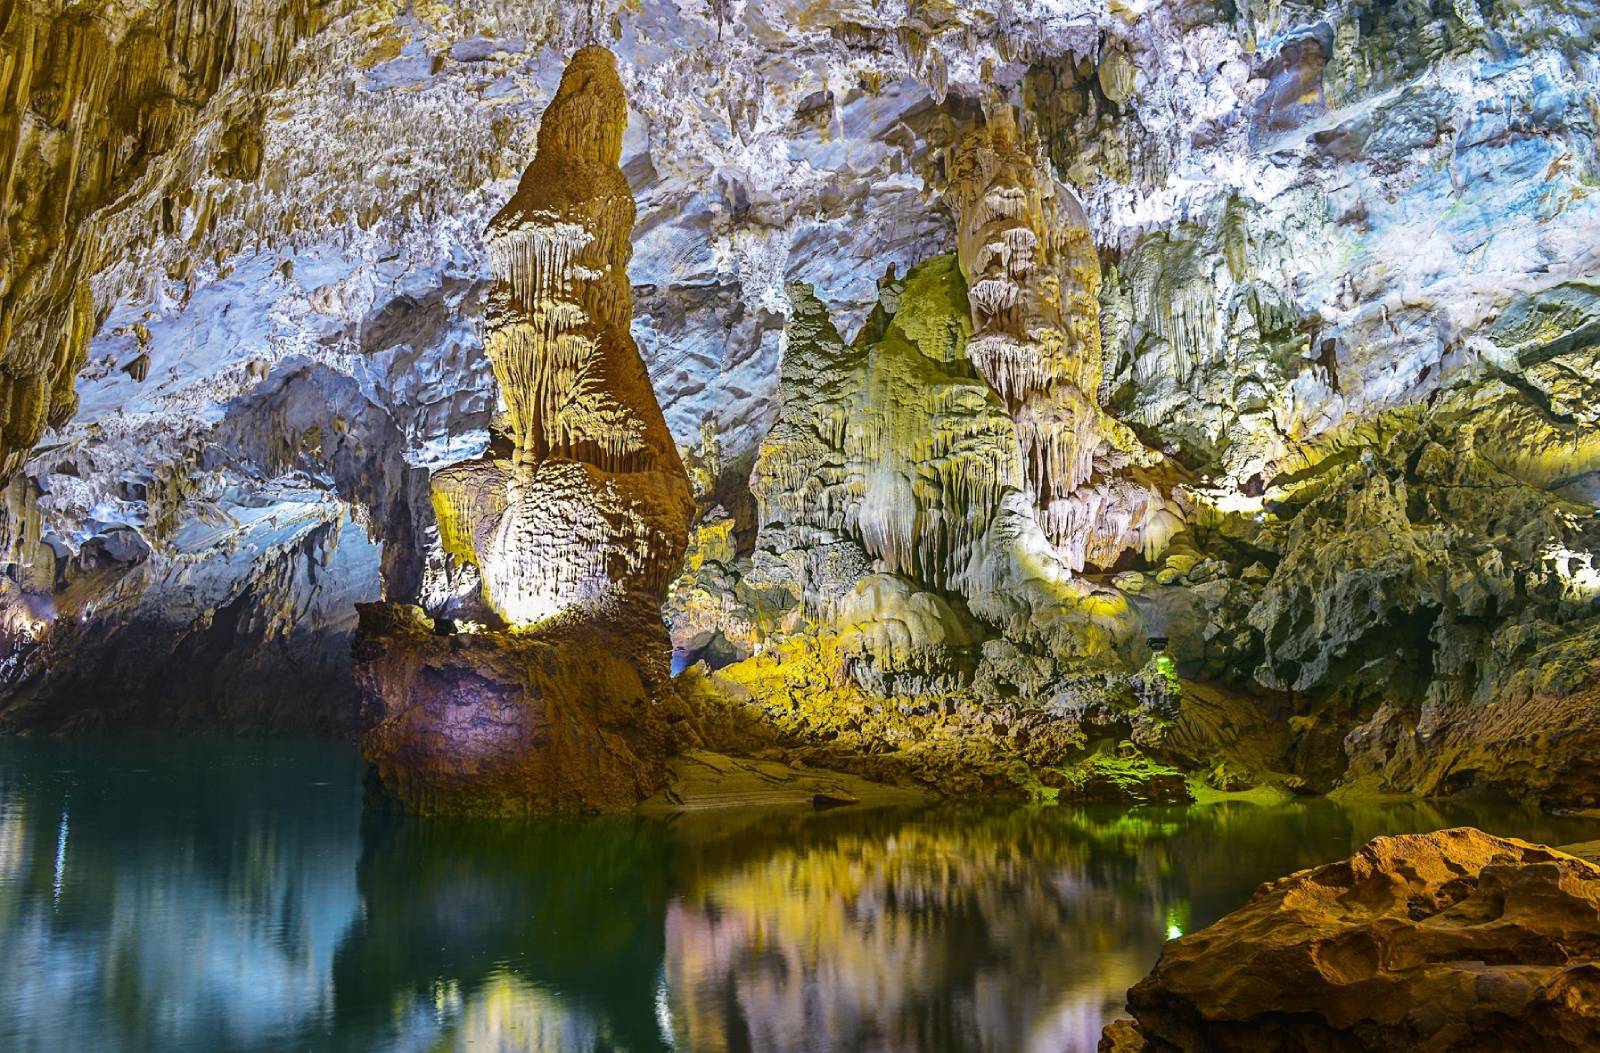 Son Doong Cave, Phong Nha Ke Bang National Park, Quang Binh Province